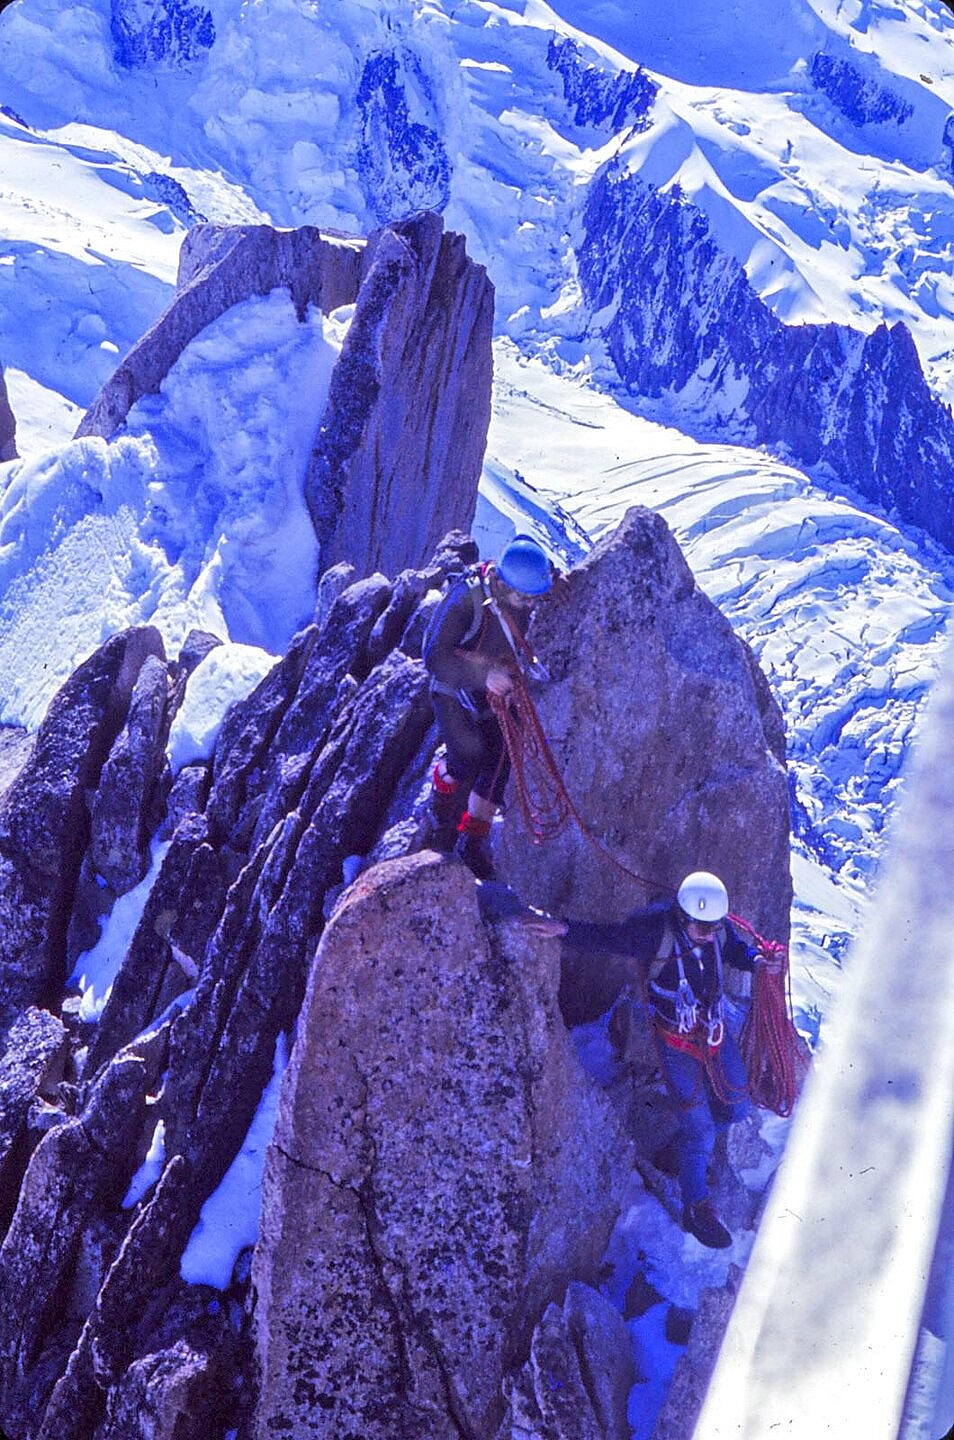 Aiguille du Midi, Mt Blanc area, Southern France  © Gene1000